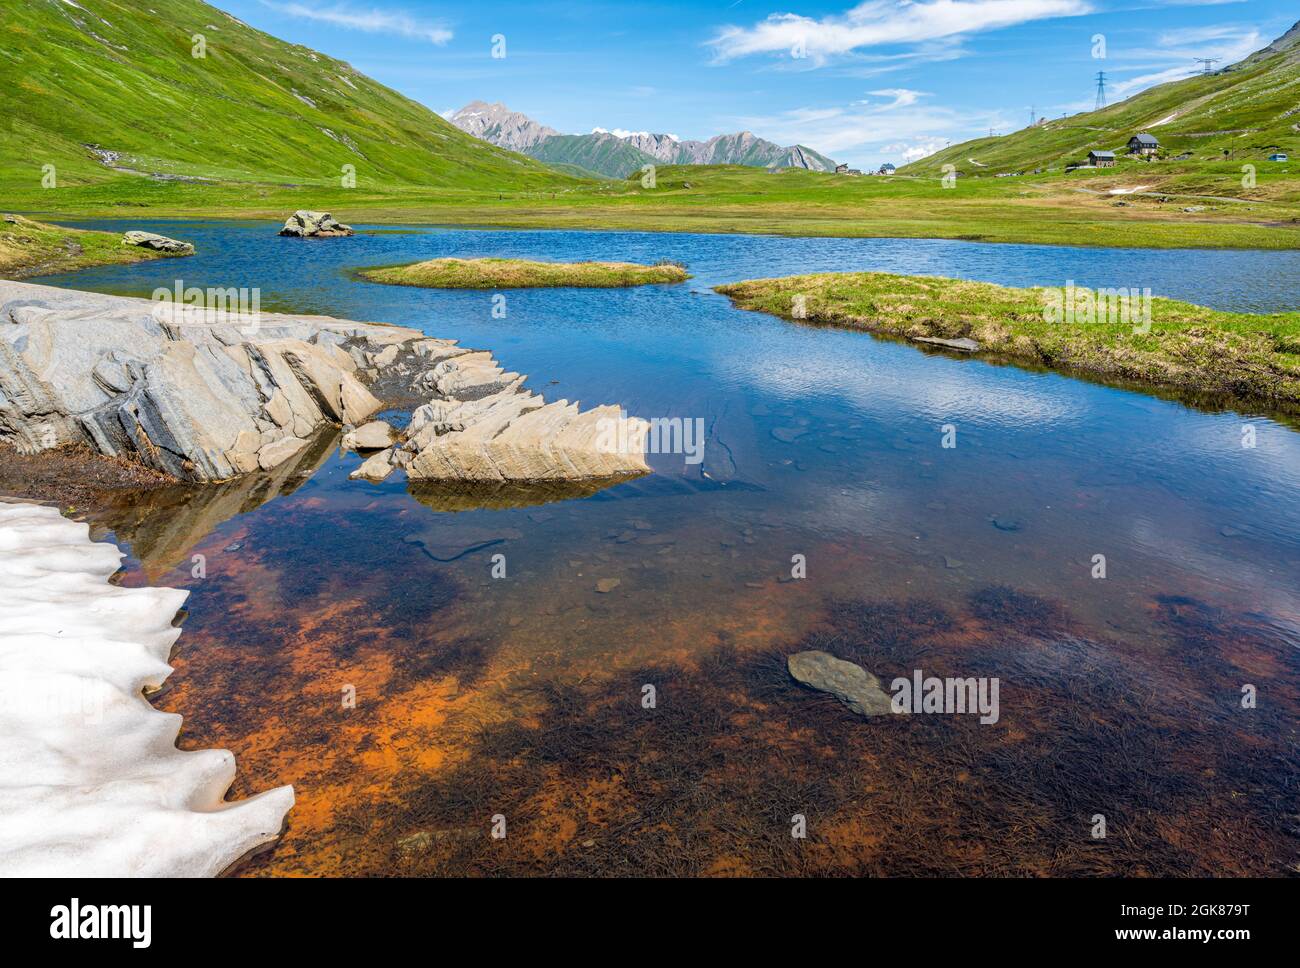 Schöne Landschaft am Kleinen Sankt Bernhard Pass an einem Sommernachmittag, zwischen Italien und Frankreich. Stockfoto